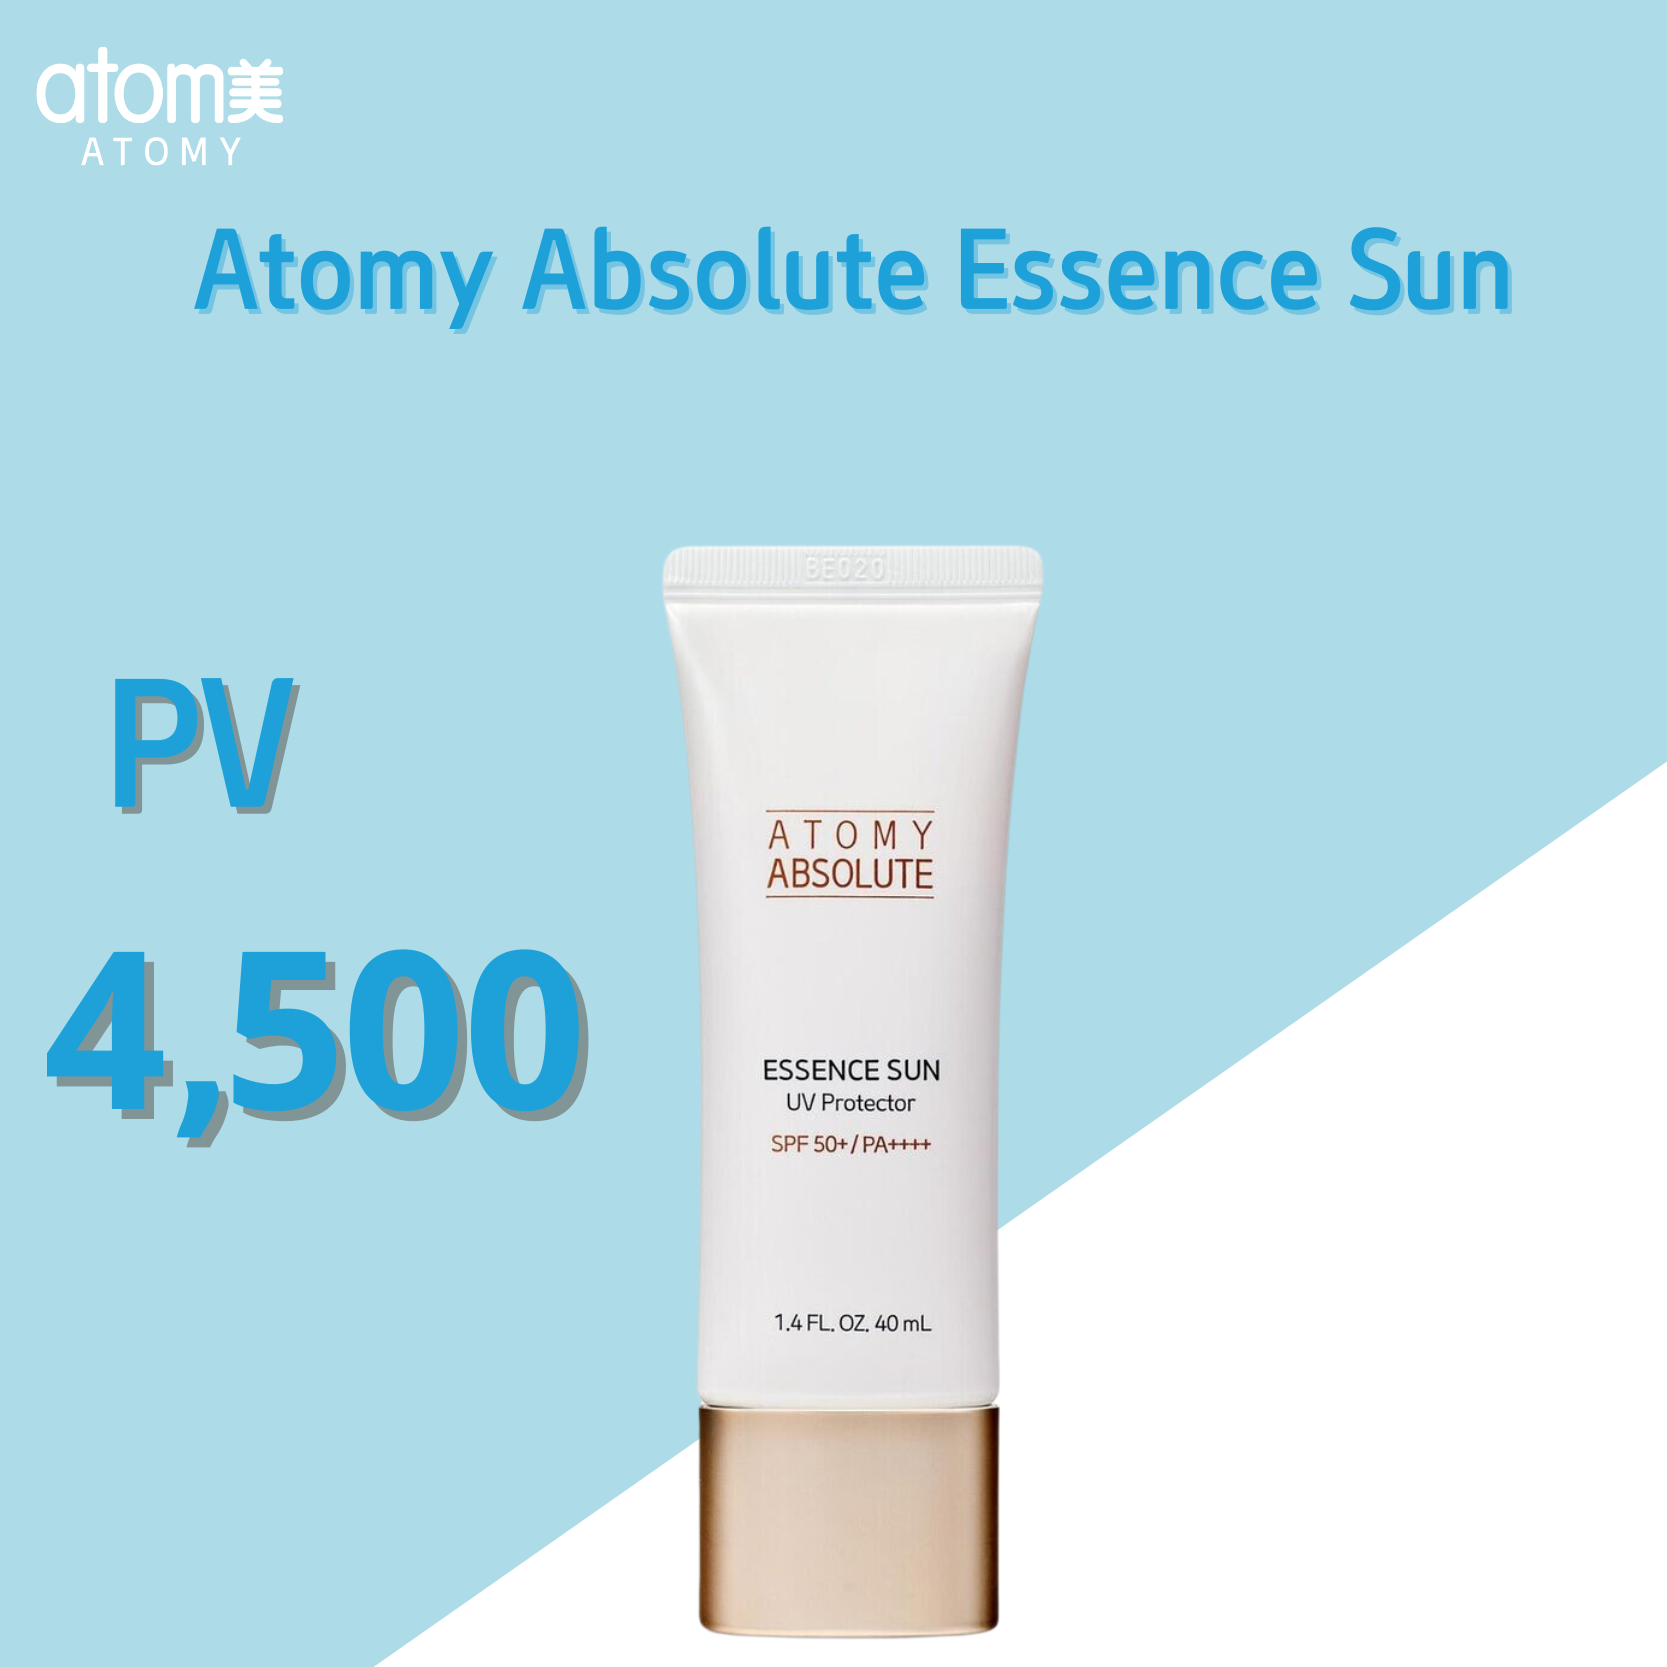 សេរ៉ូមការពារស្បែក អាតូមី អាប់សូលូត / Atomy Absolute Essence Sun | Atomy Cambodia